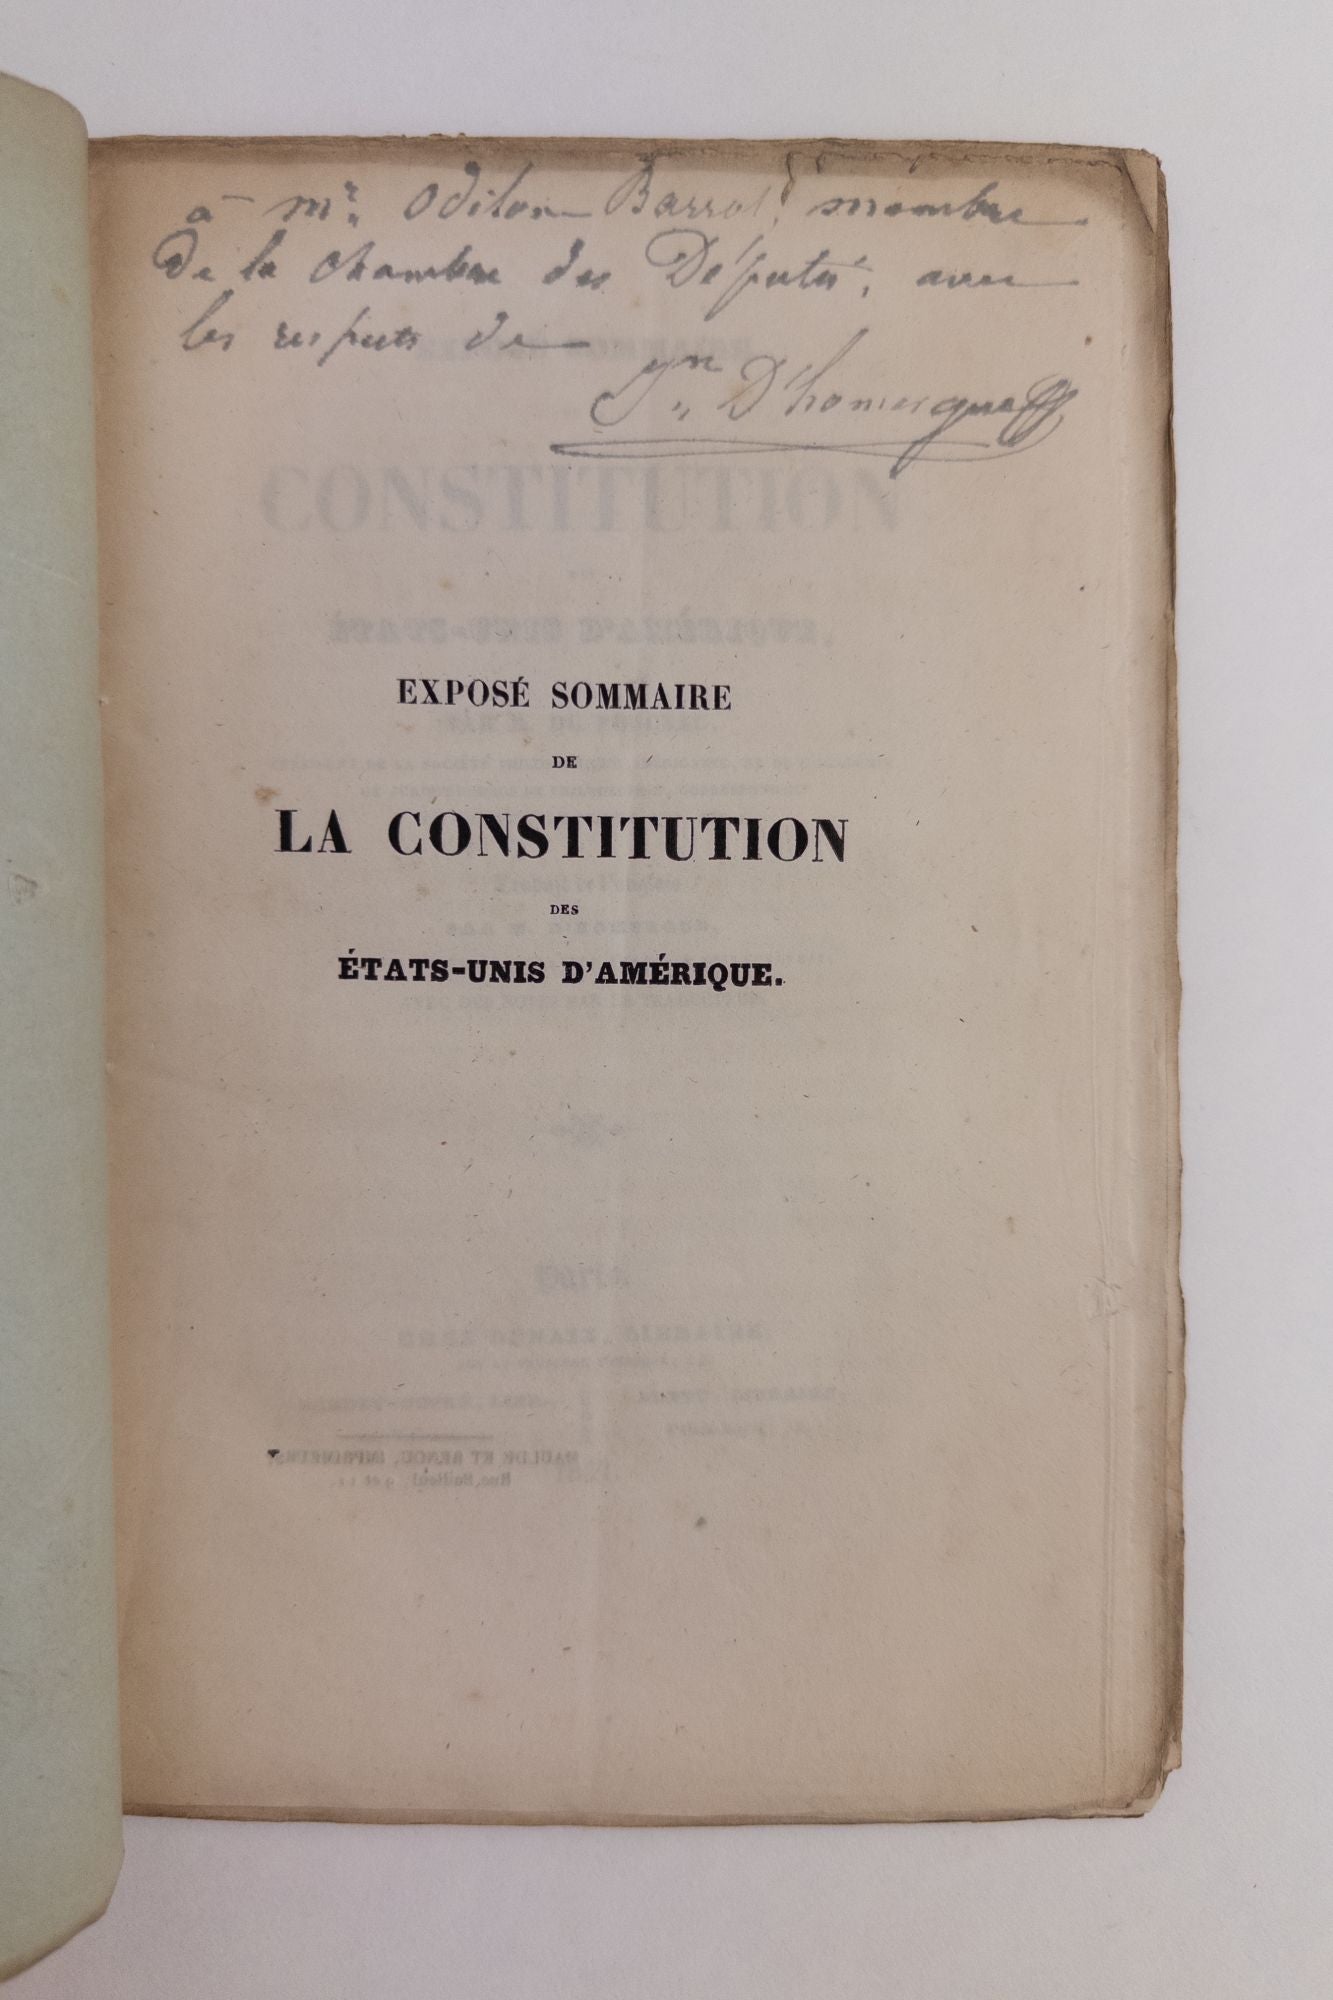 Product Image for EXPOSE SOMMAIRE DE LA CONSTITUTION DES ETATS-UNIS D'AMERIQUE